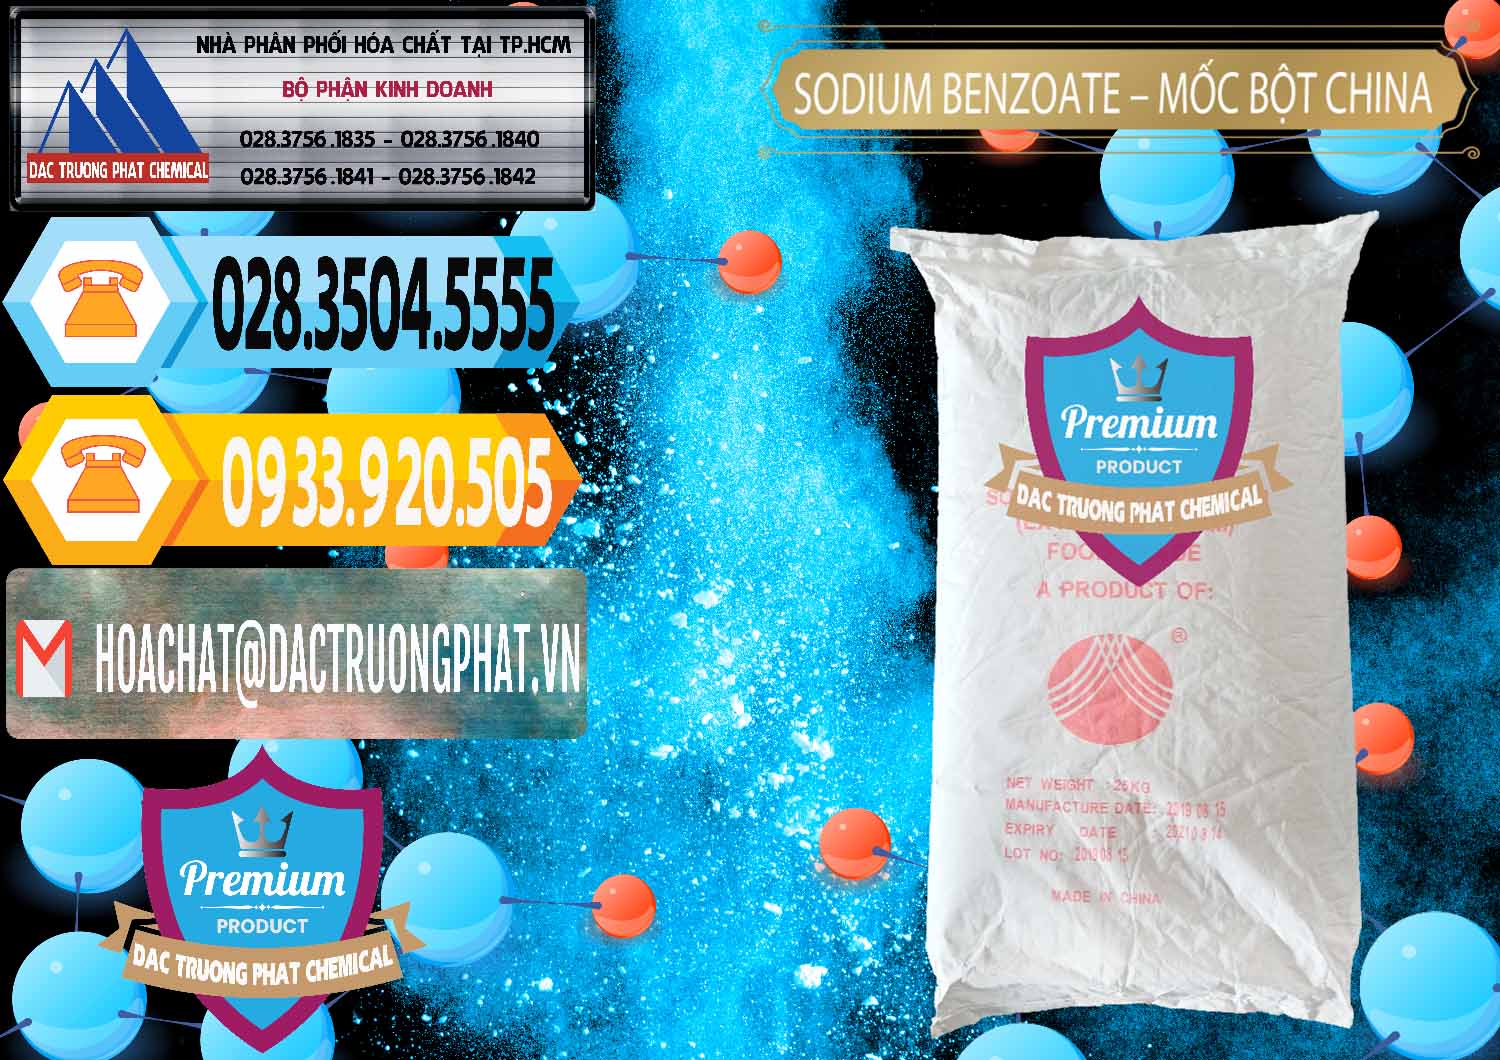 Công ty kinh doanh _ bán Sodium Benzoate - Mốc Bột Chữ Cam Food Grade Trung Quốc China - 0135 - Cty chuyên nhập khẩu _ cung cấp hóa chất tại TP.HCM - hoachattayrua.net